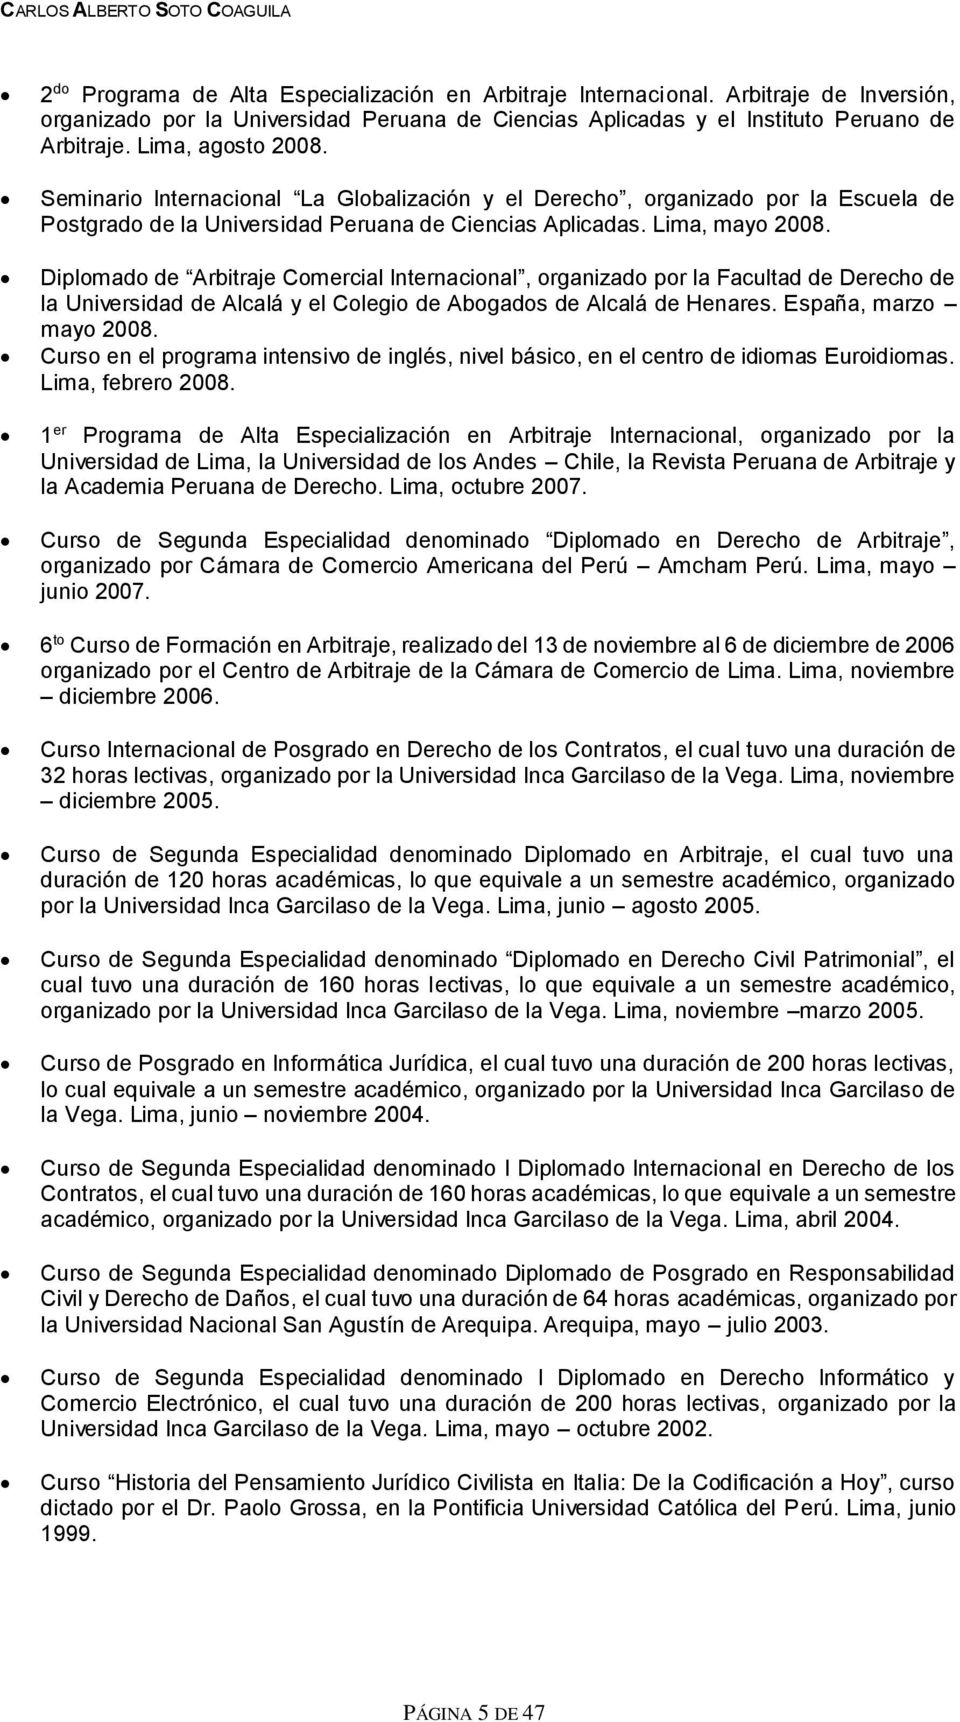 Diplomado de Arbitraje Comercial Internacional, organizado por la Facultad de Derecho de la Universidad de Alcalá y el Colegio de Abogados de Alcalá de Henares. España, marzo mayo 2008.